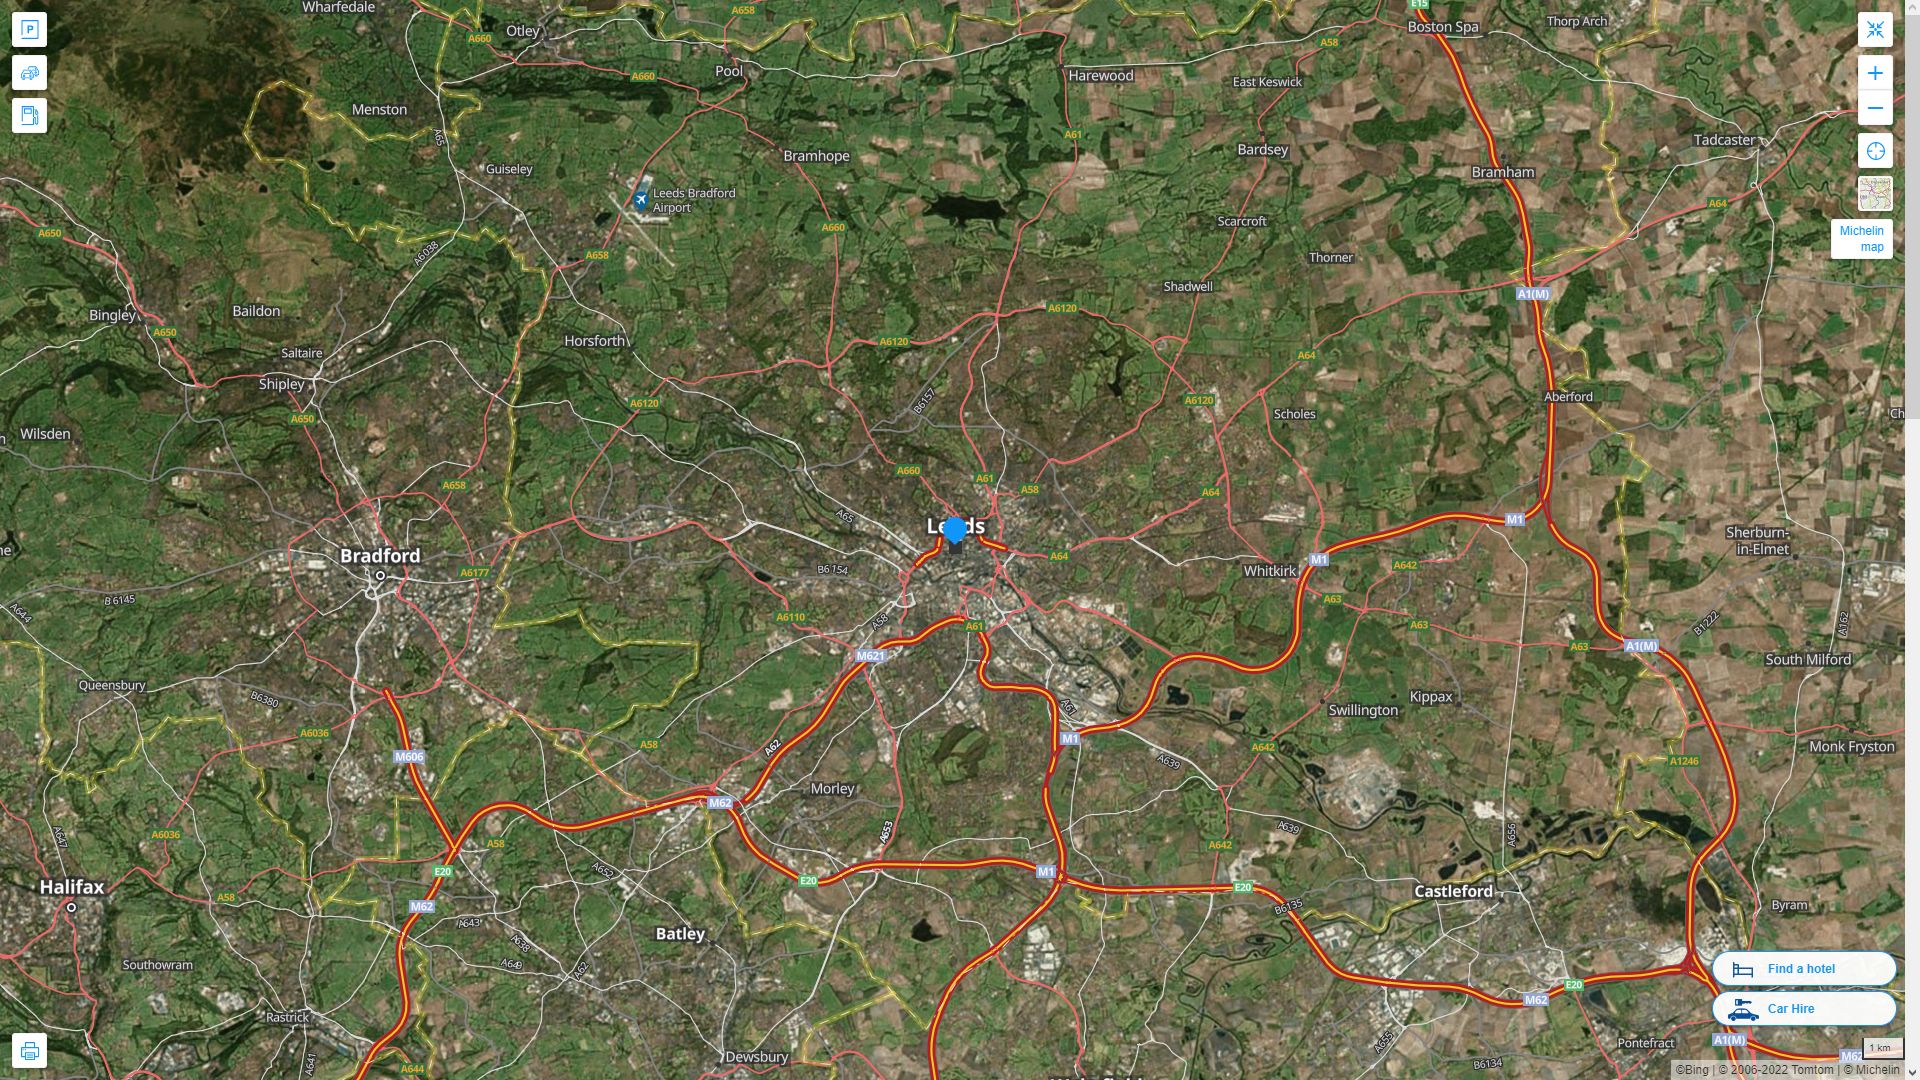 Leeds Royaume Uni Autoroute et carte routiere avec vue satellite